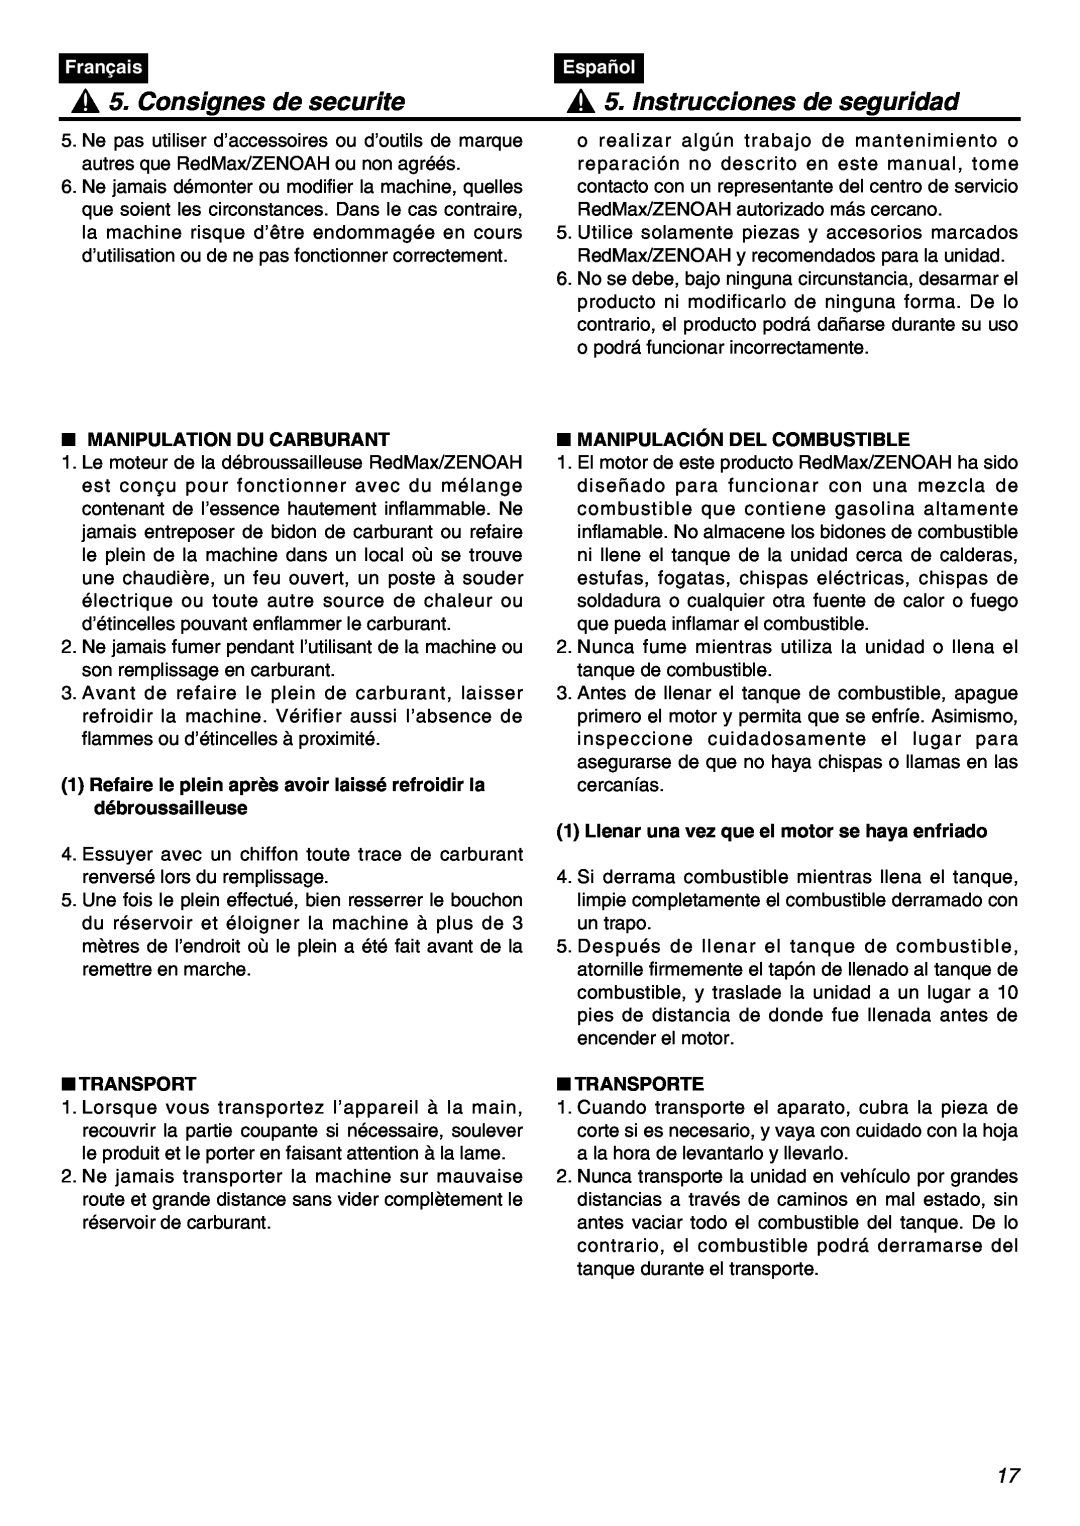 Zenoah BT250 Consignes de securite, Instrucciones de seguridad, Français, Español, Manipulation Du Carburant, Transport 